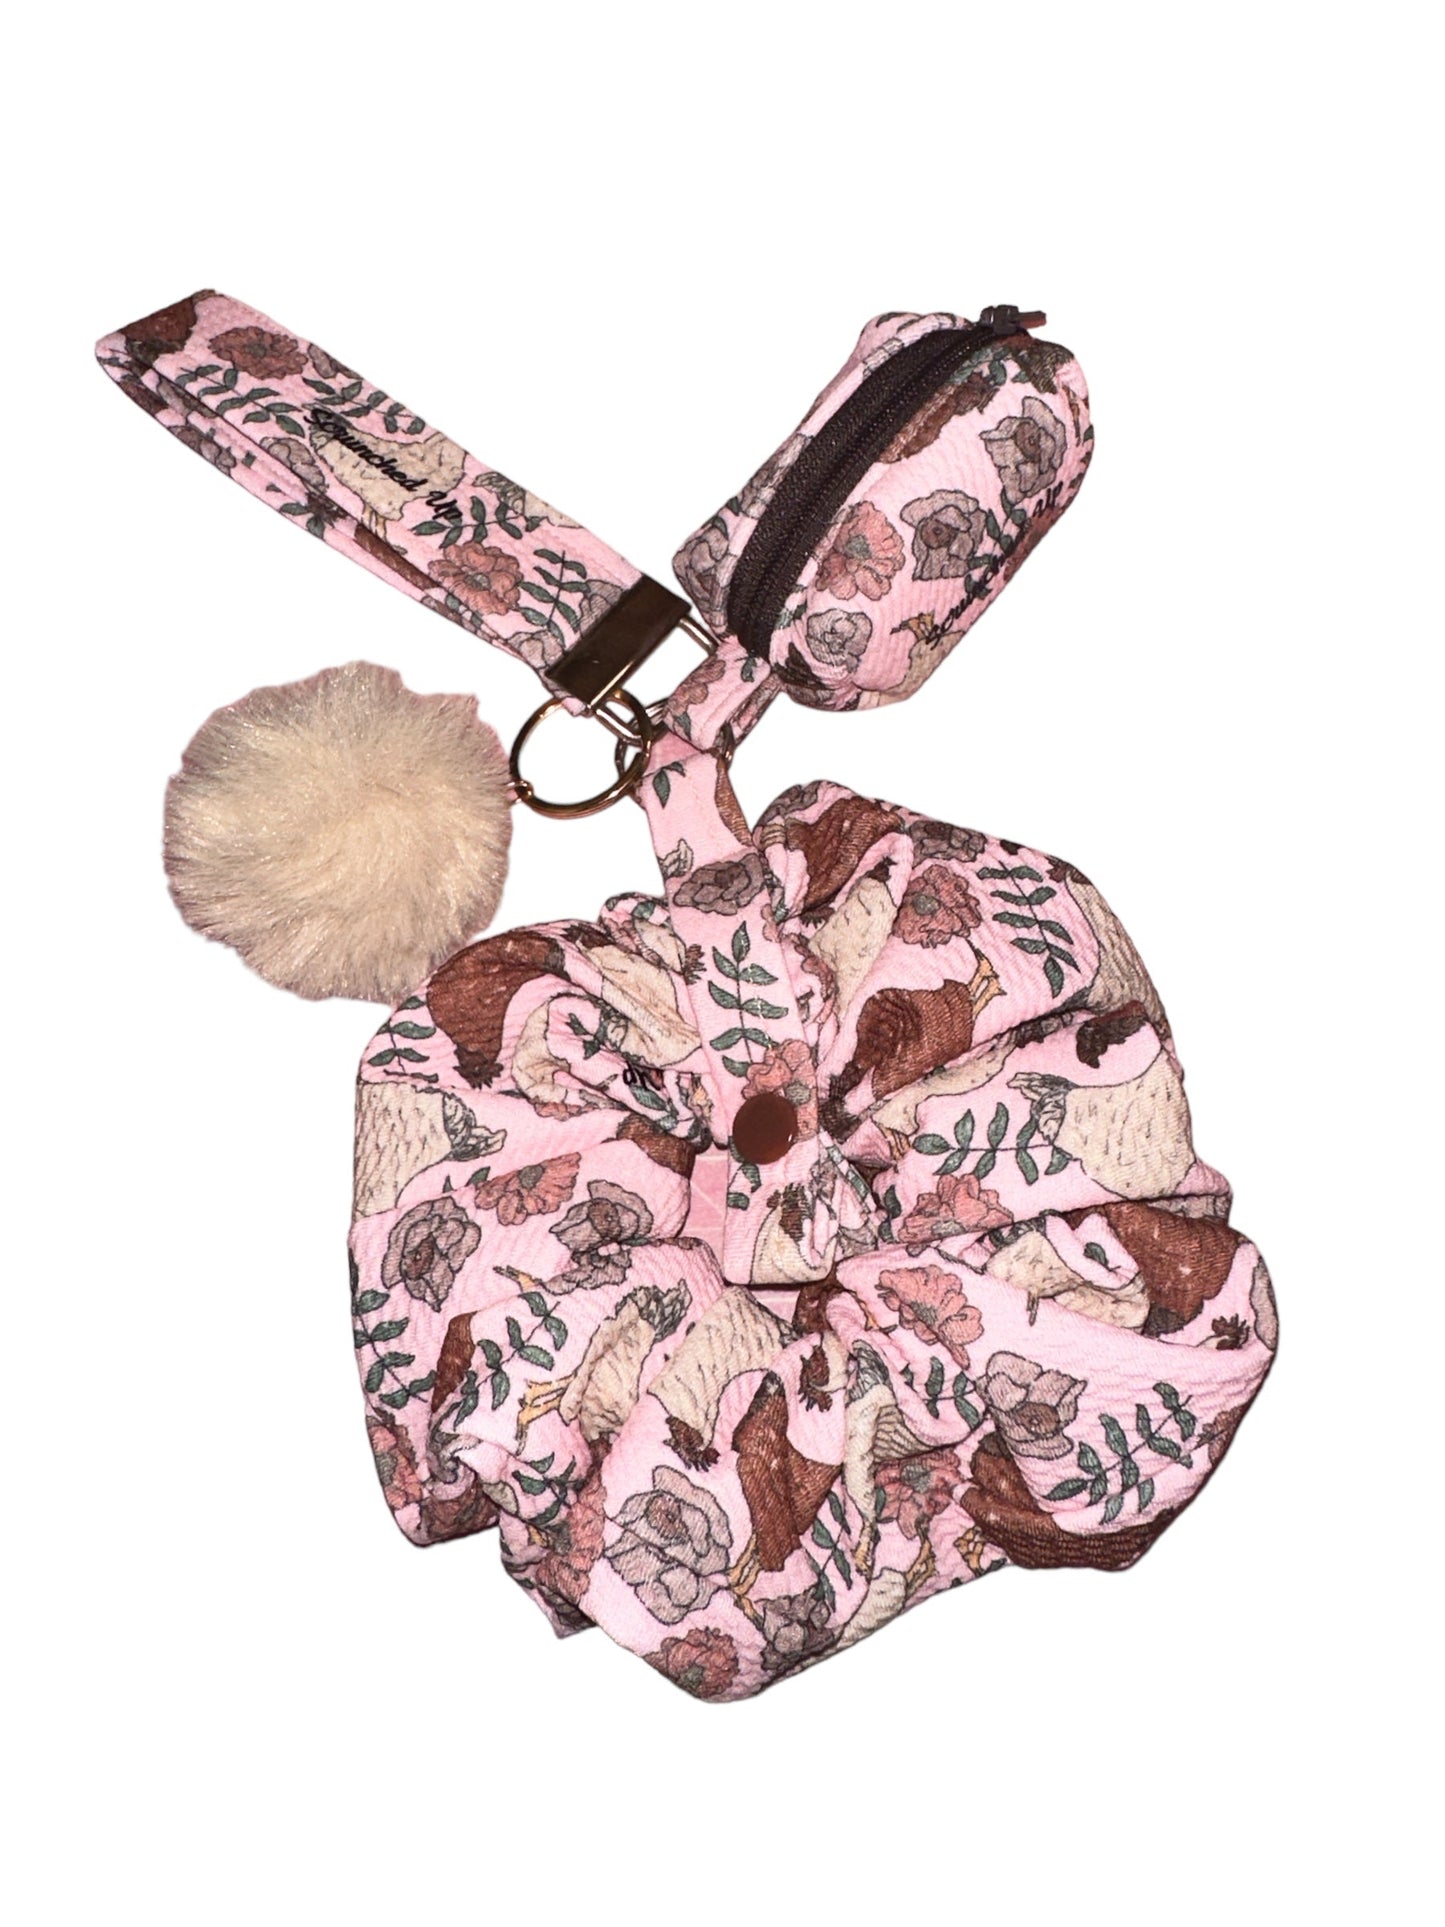 Henrietta Chicken Liverpool fabric keychain with detachable scrunchie